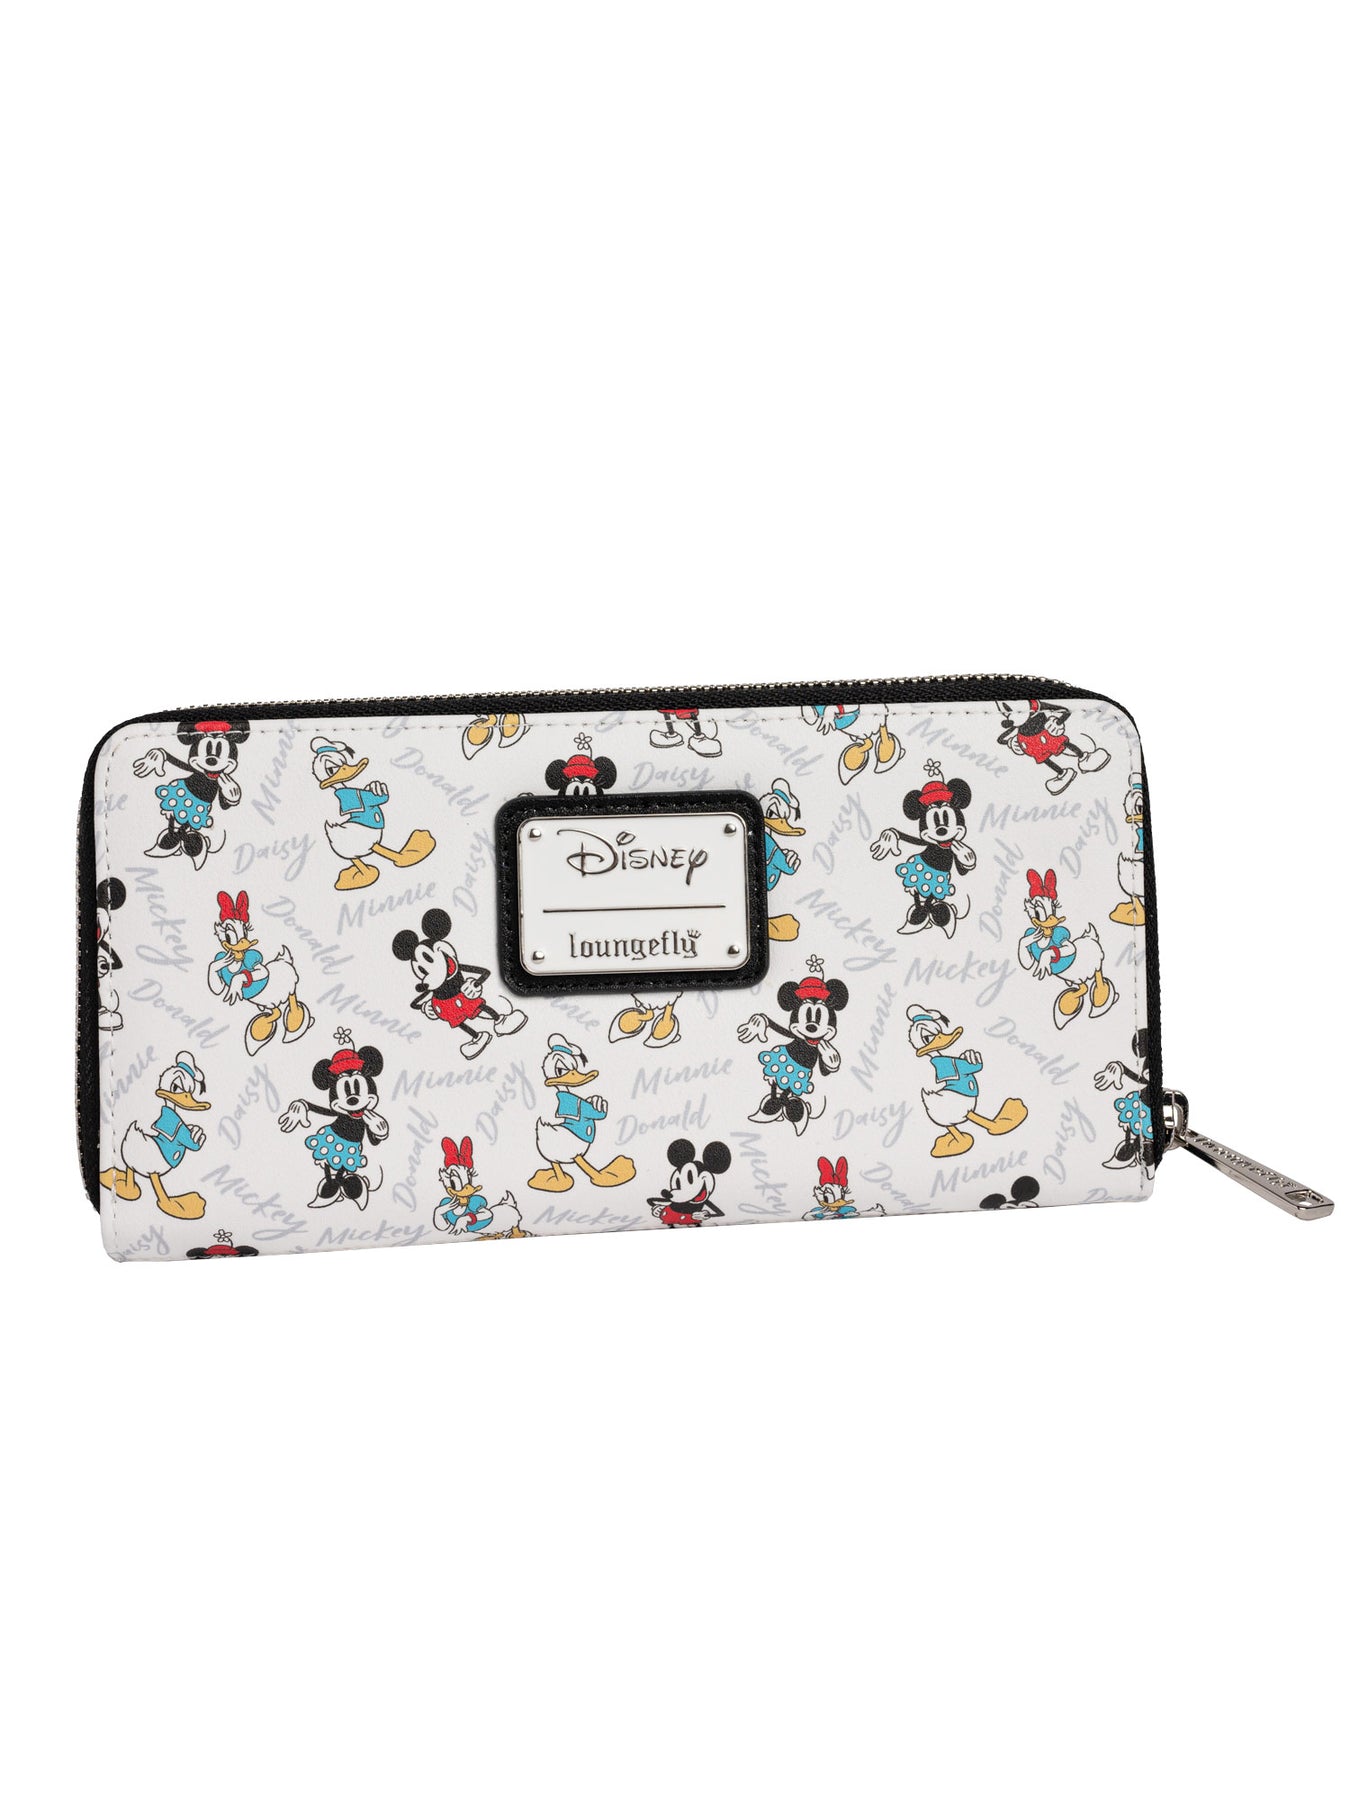 Loungefly x Disney Women's Mickey Minnie Donald Daisy Zip Around